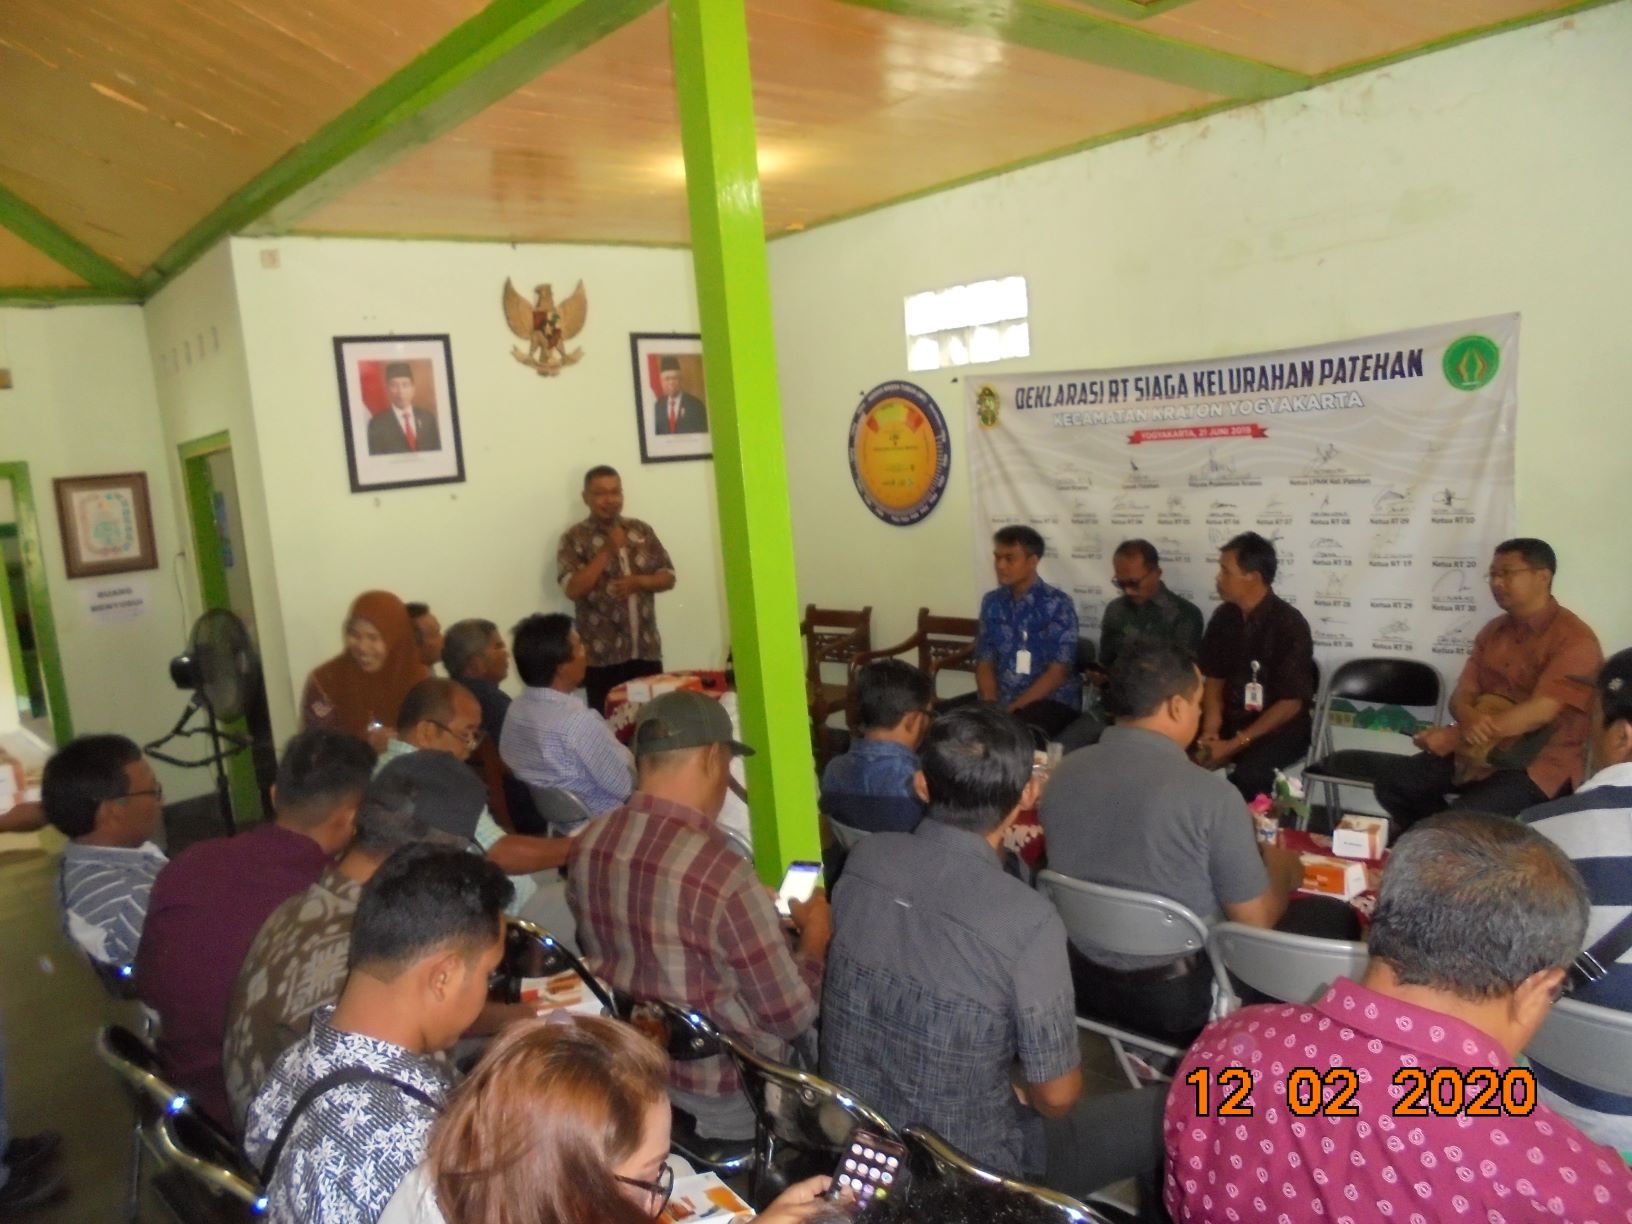 Kunjungan Kerja Dinas Komunikasi dan Informatika Pemerintah Kabupaten Gianyar, Provinsi Bali